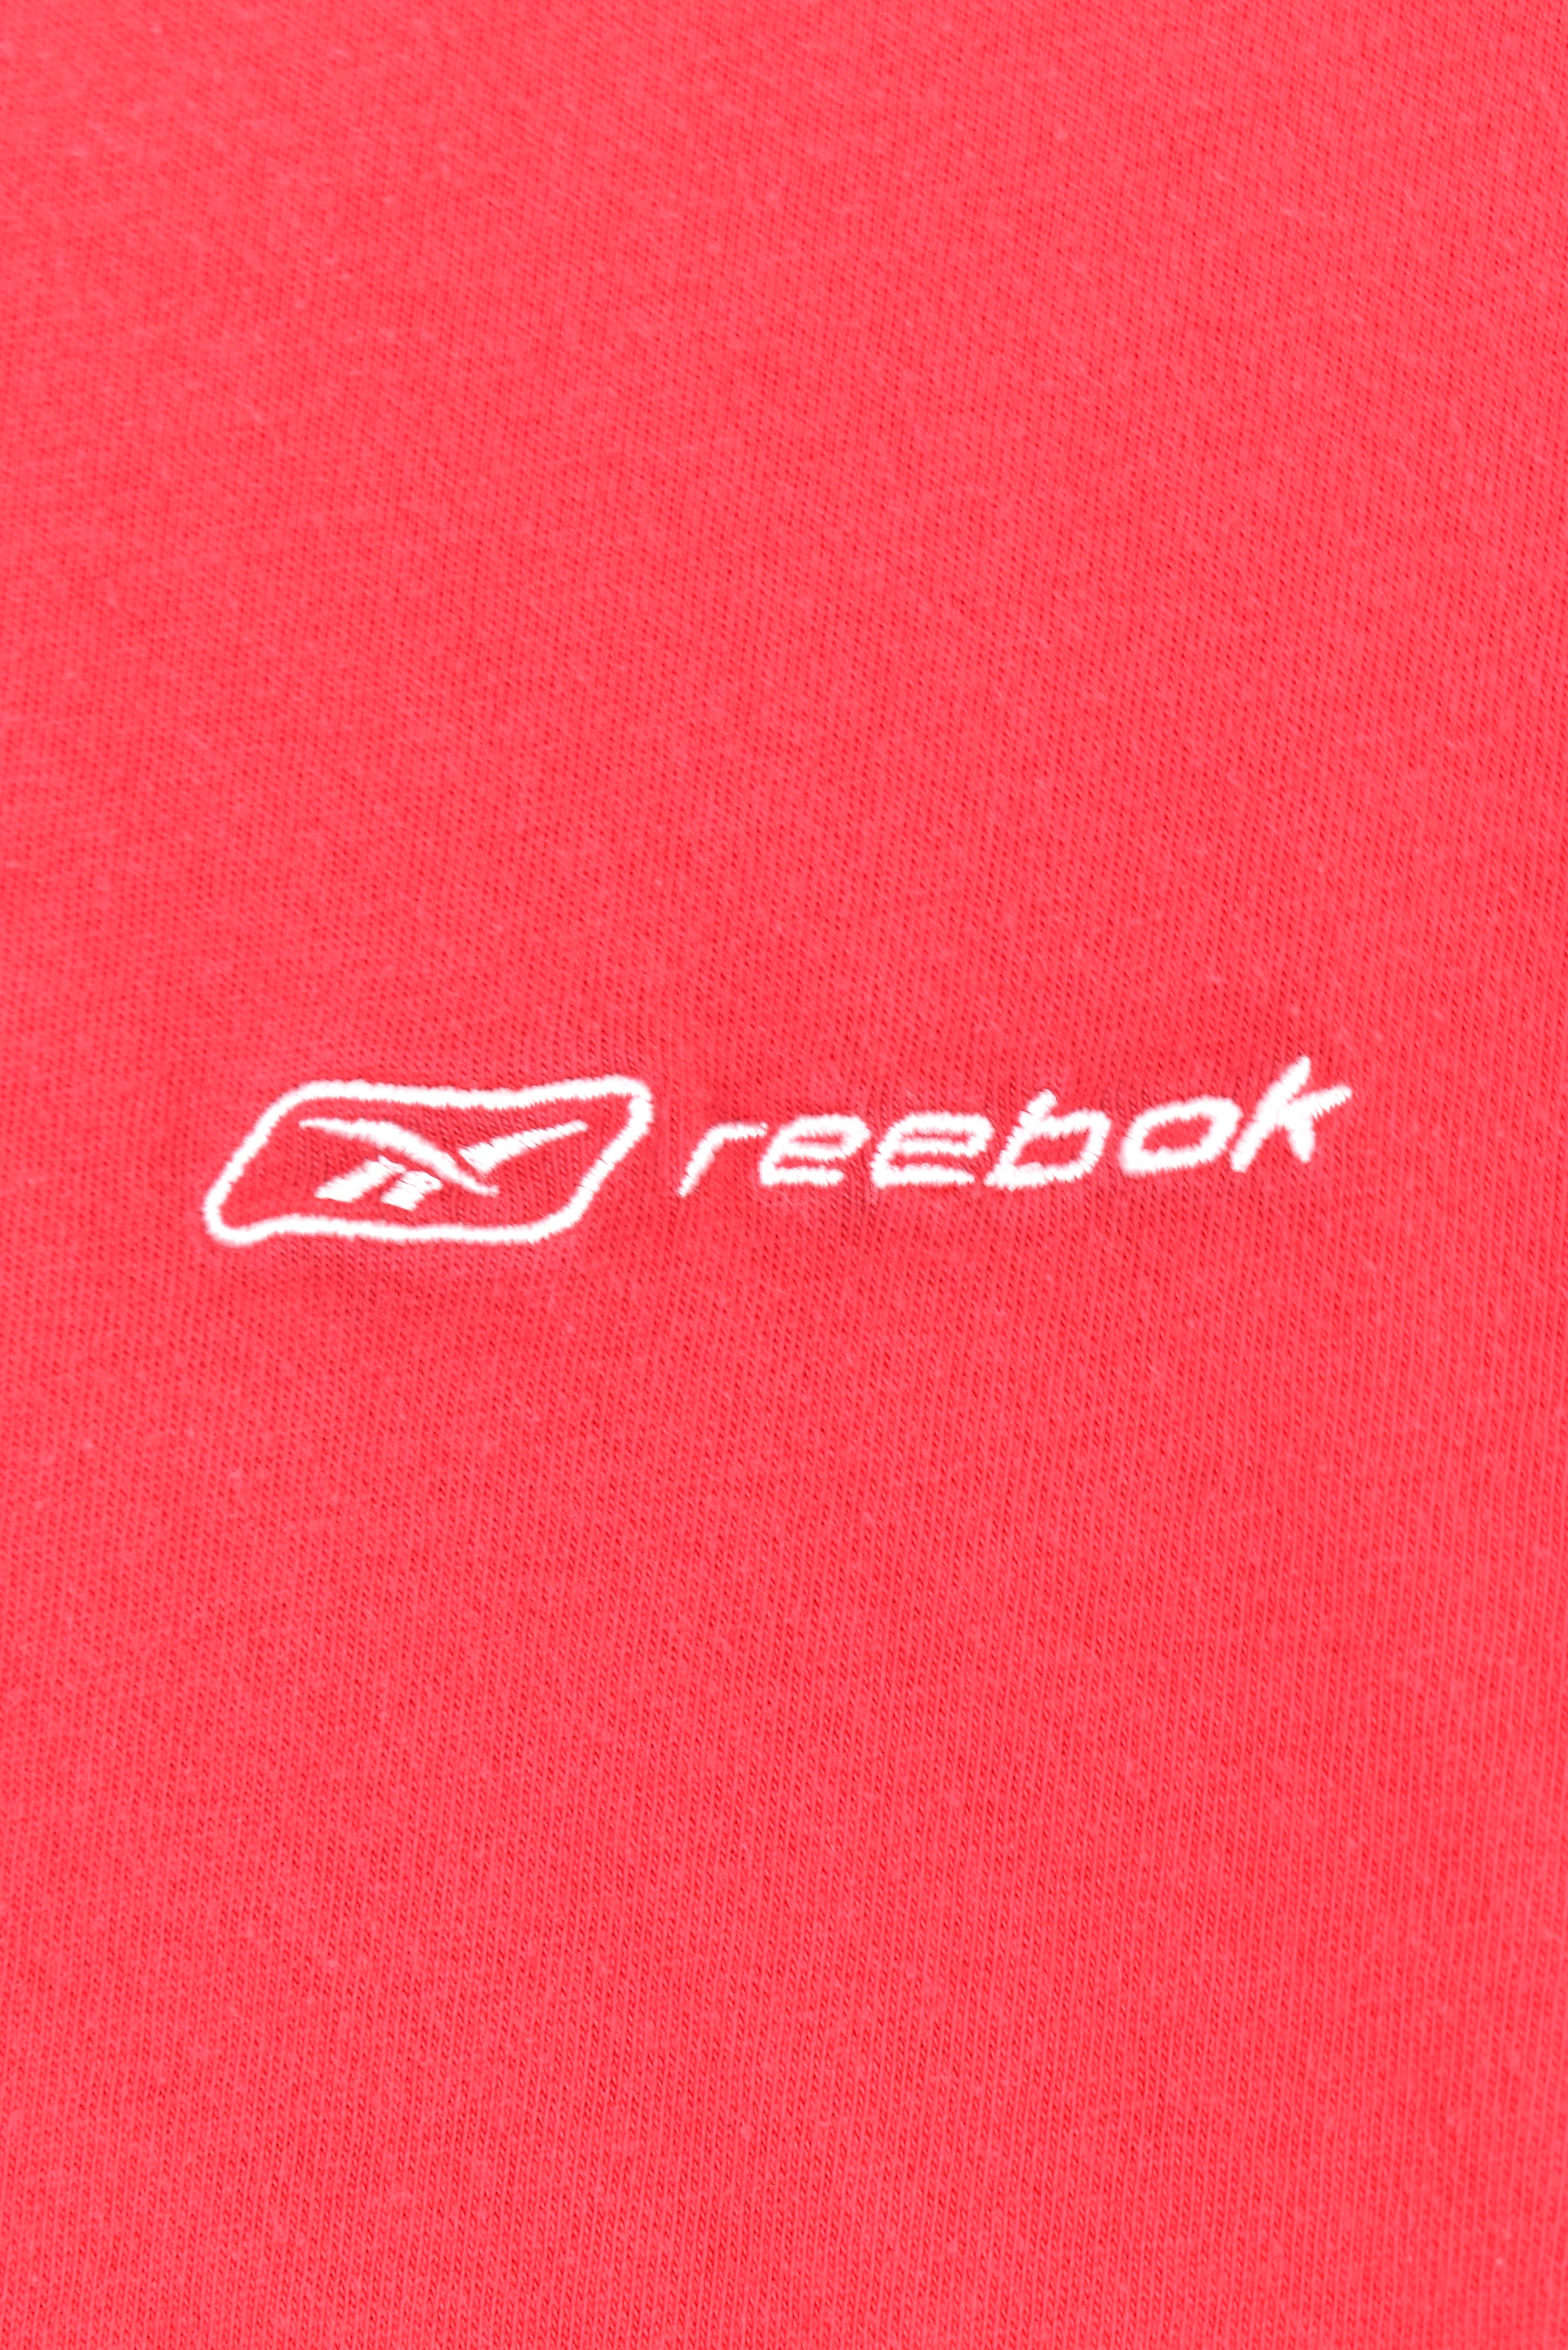 Vintage Reebok shirt, short sleeve embroidered tee - AU M REEBOK